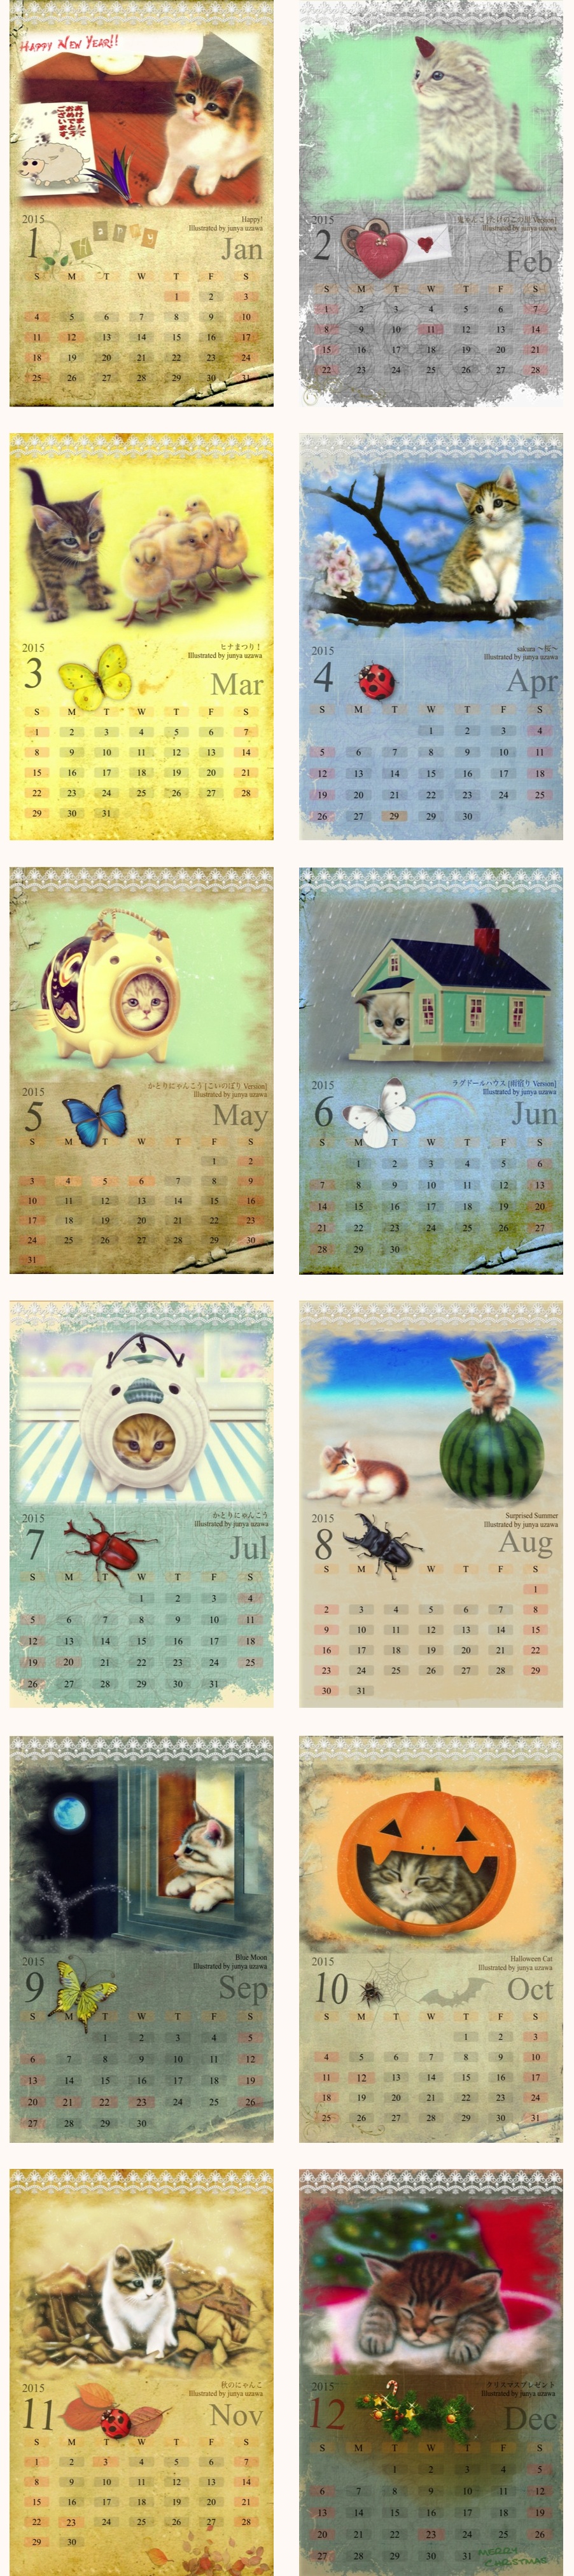 かわいい子猫のイラストのハンドメイドのカレンダー 15年版 アンティーク風 Junya Blog 猫 犬 リアリズム絵画